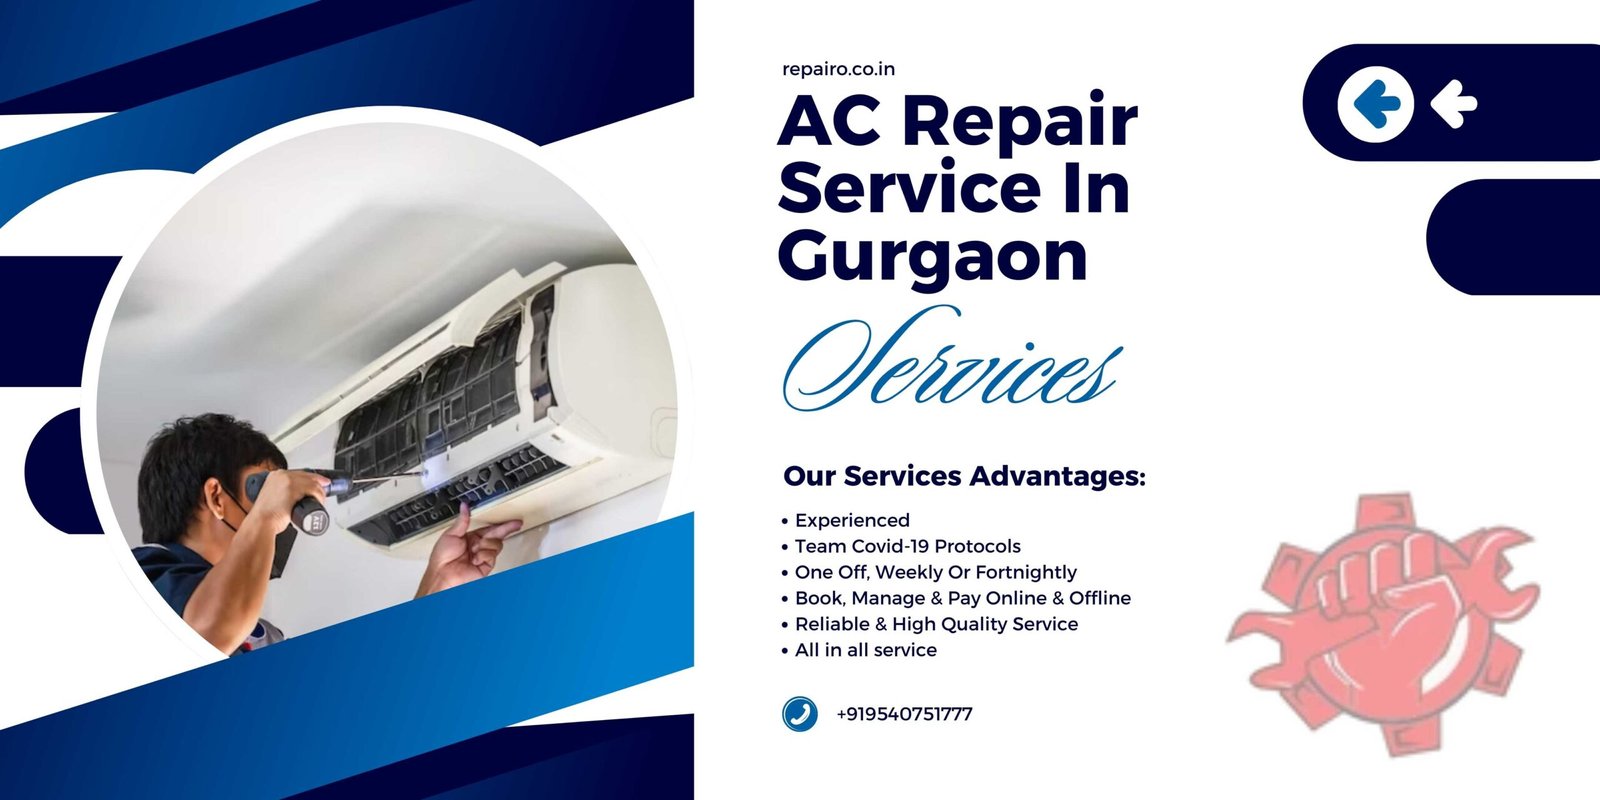 AC Repair Service in Gurgaon